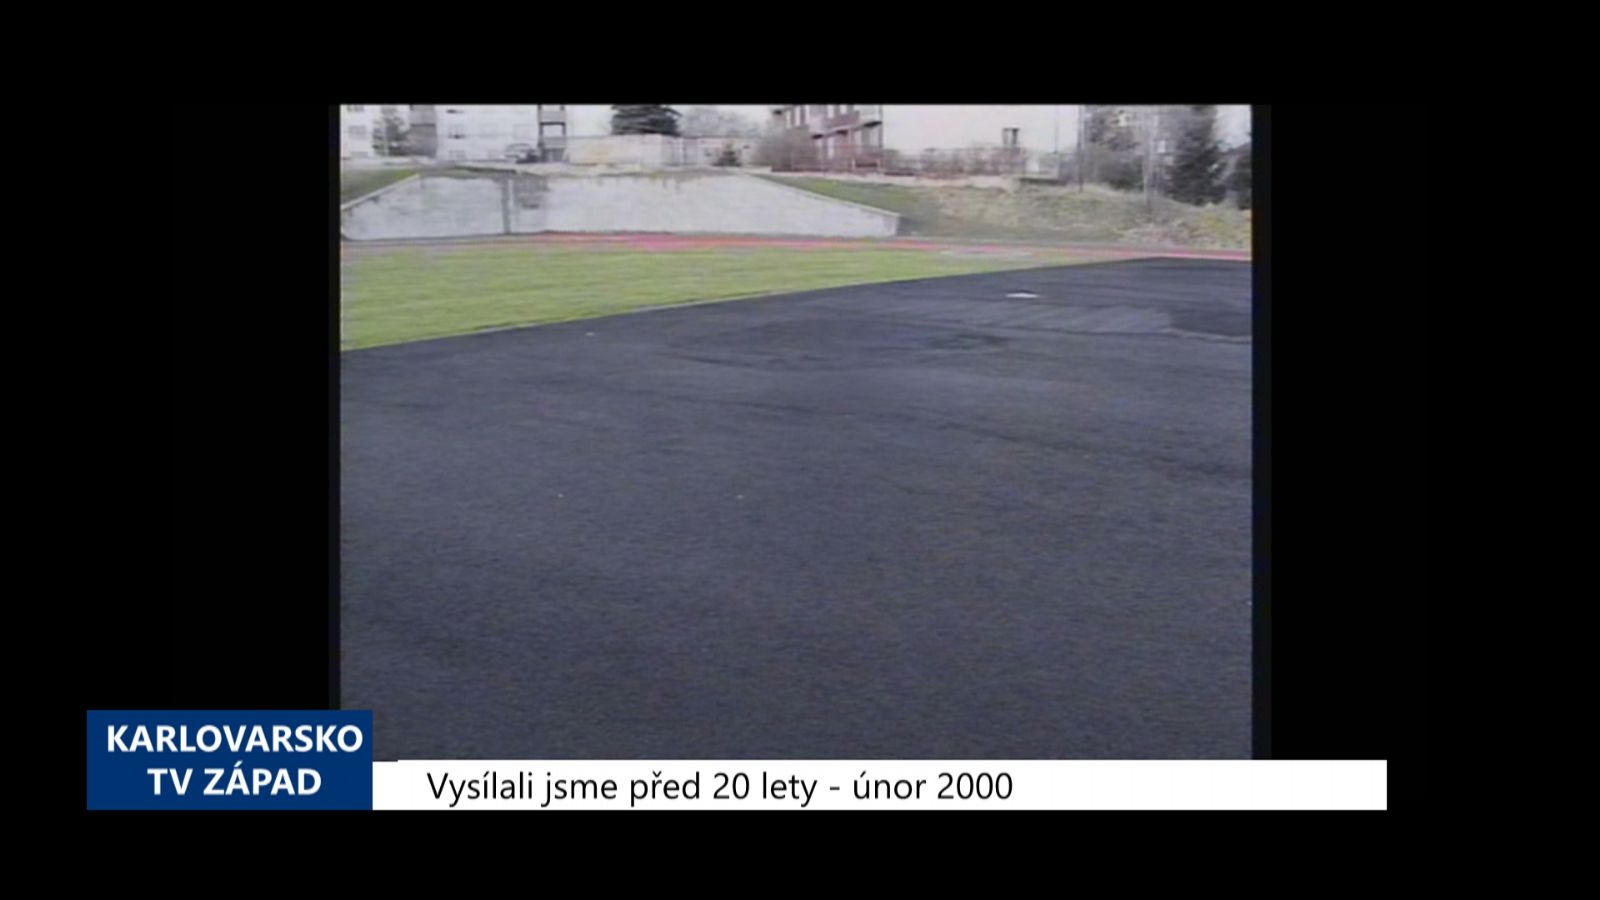 2000 – Cheb: Výstavbu sportovního areálu u 1. ZŠ provází komplikace (TV Západ)